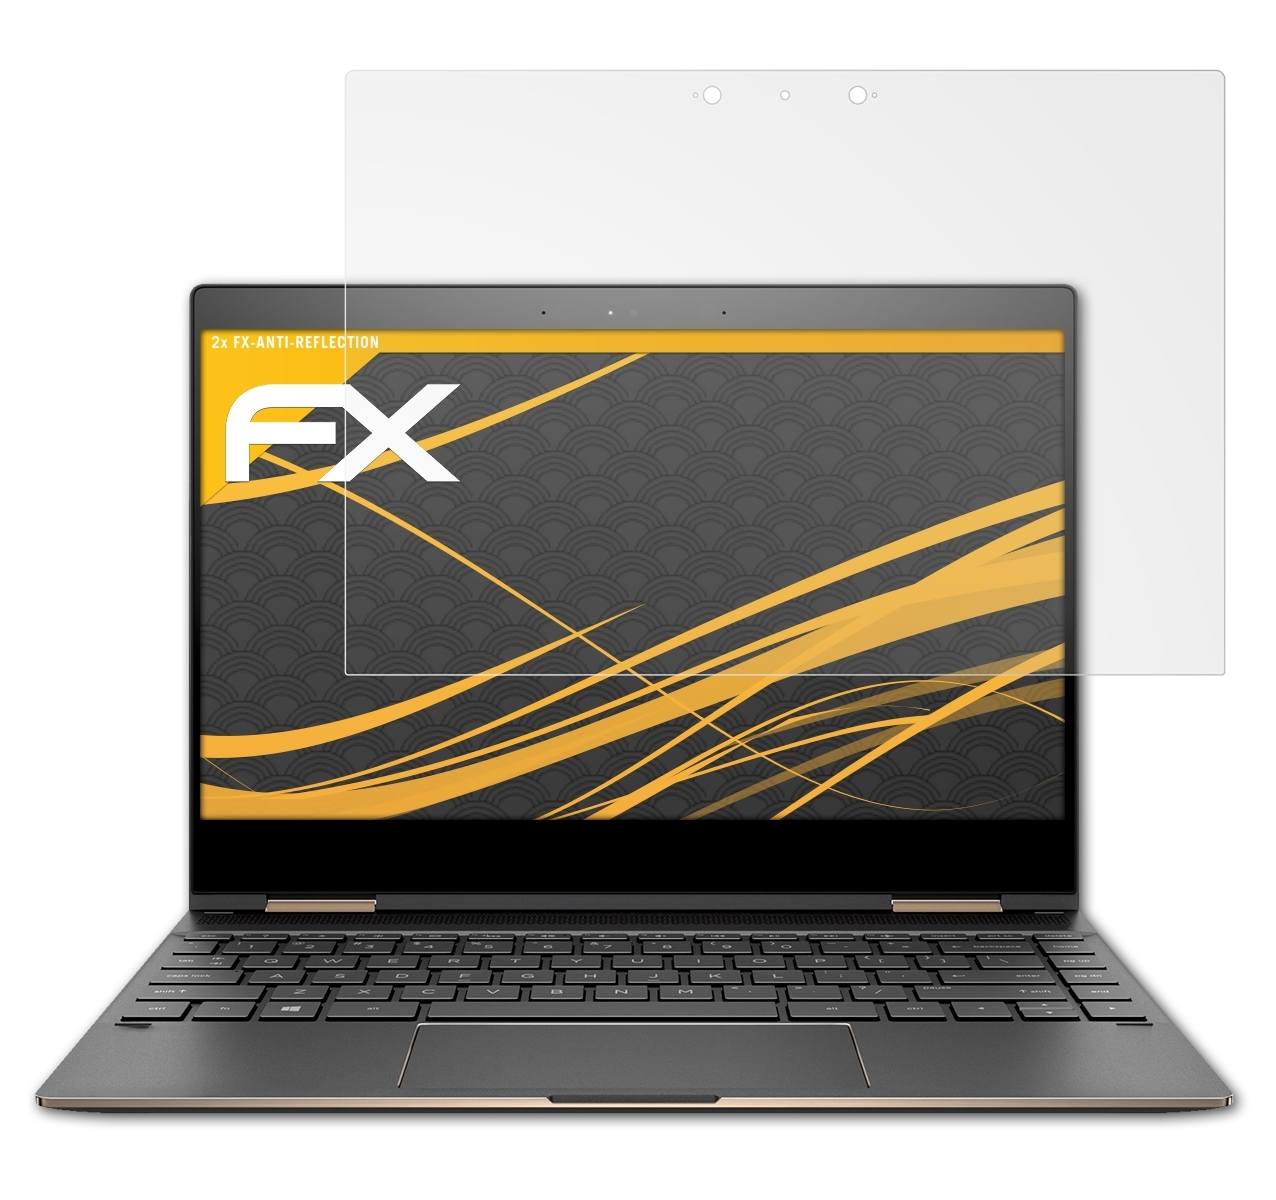 (13,3 ATFOLIX inch)) FX-Antireflex 2x HP 13-ae004na Displayschutz(für x360 Spectre